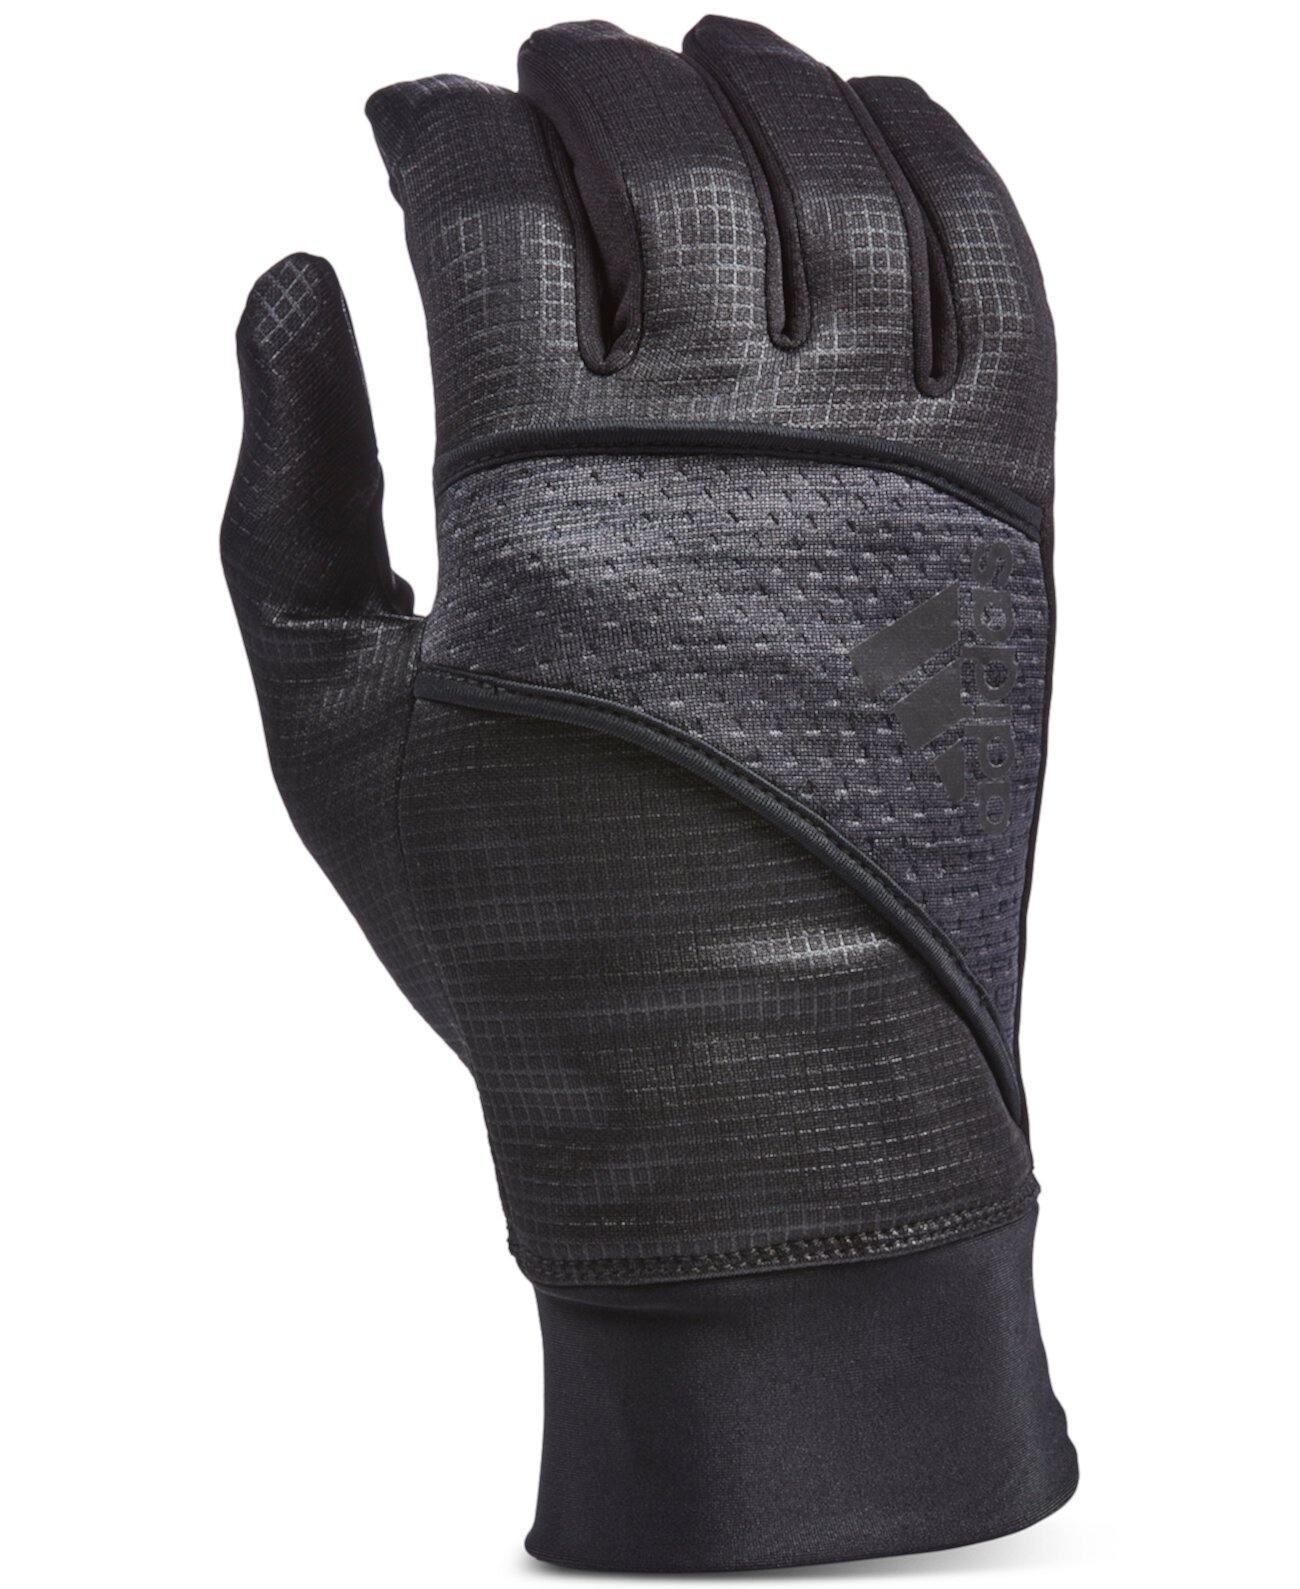 Мужские перчатки Dash 3.0 Adidas